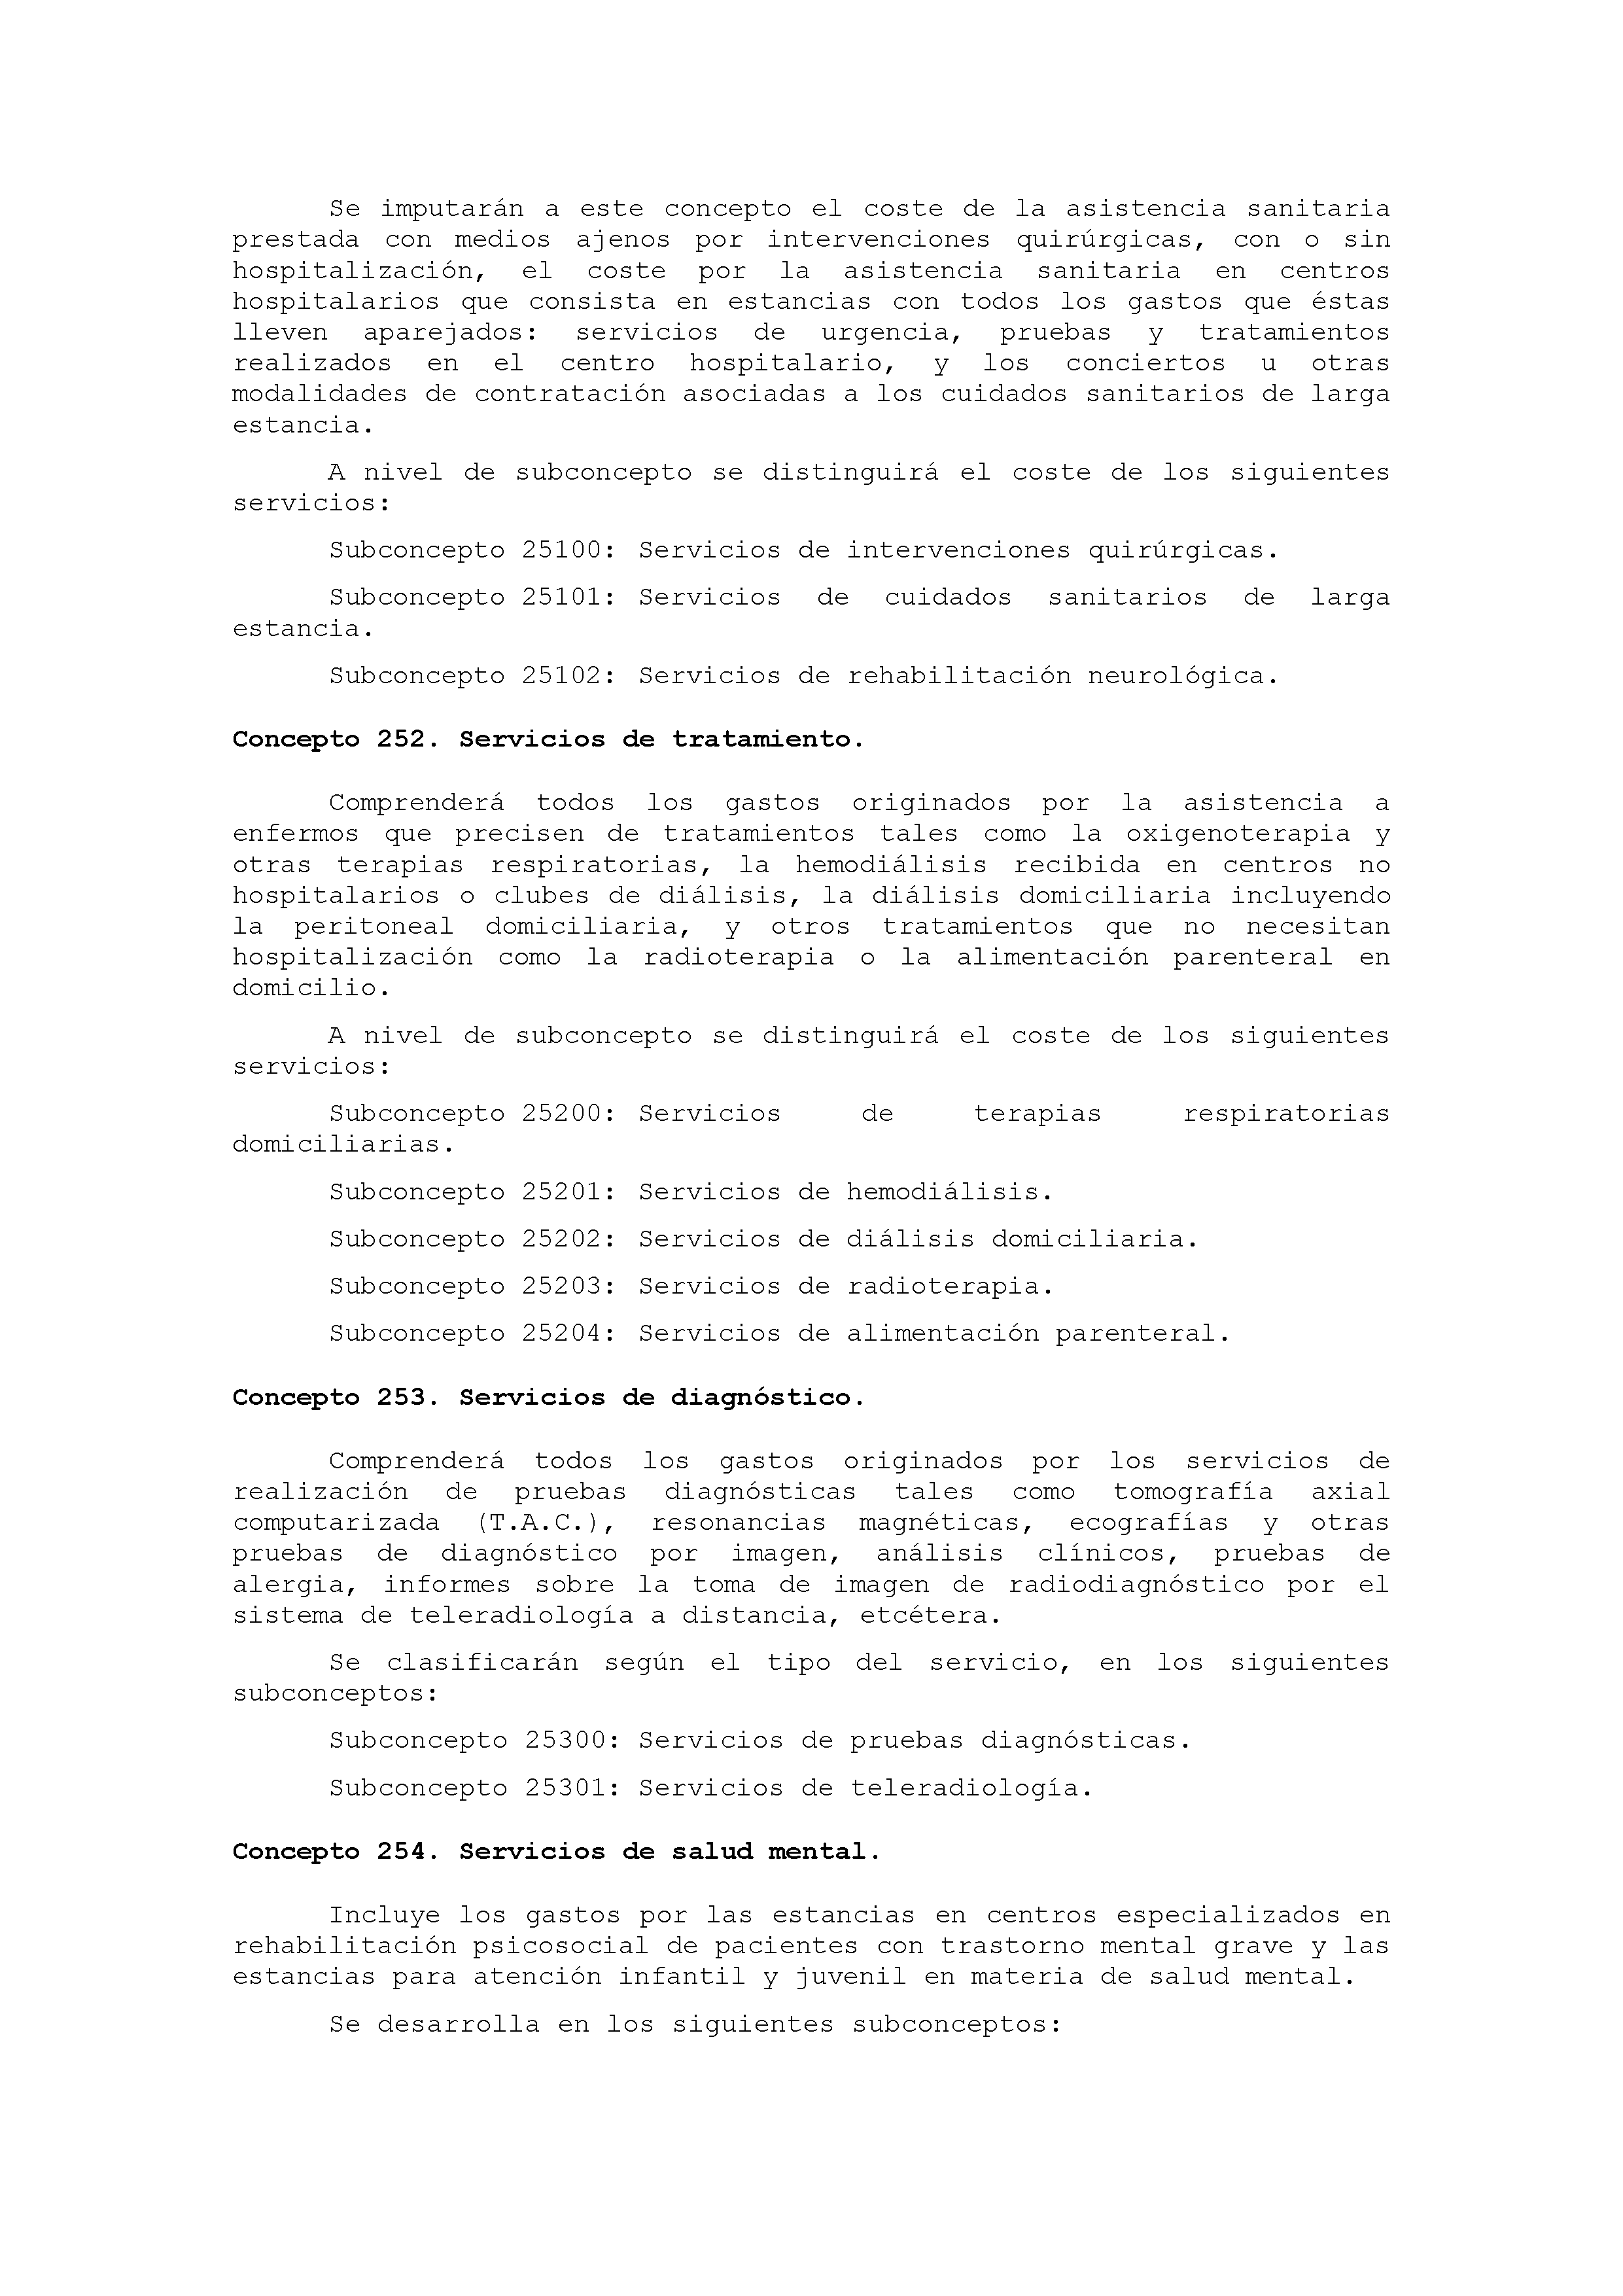 ANEXO IX CÓDIGO DE LA CLASIFICACIÓN ECONÓMICA DE LOS GASTOS PÚBLICOS Pag 25